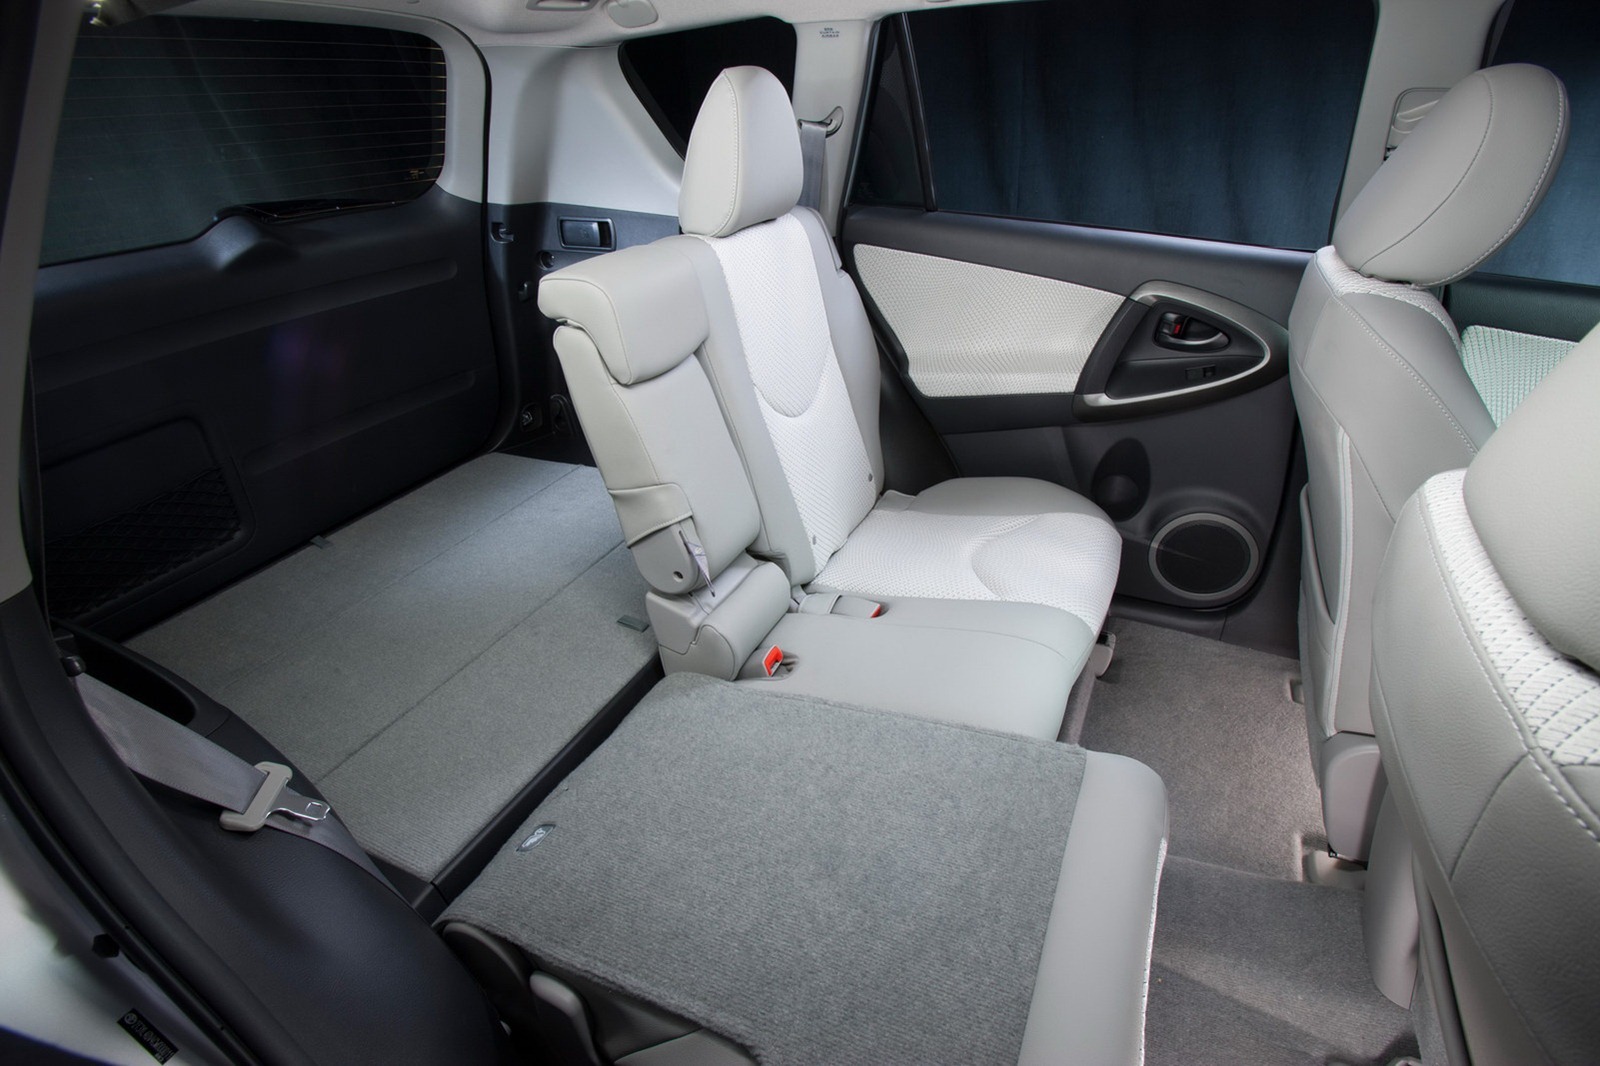 Spatiul interior al lui Toyota RAV4 EV nu este afectat de sistemul de propulsie electrica